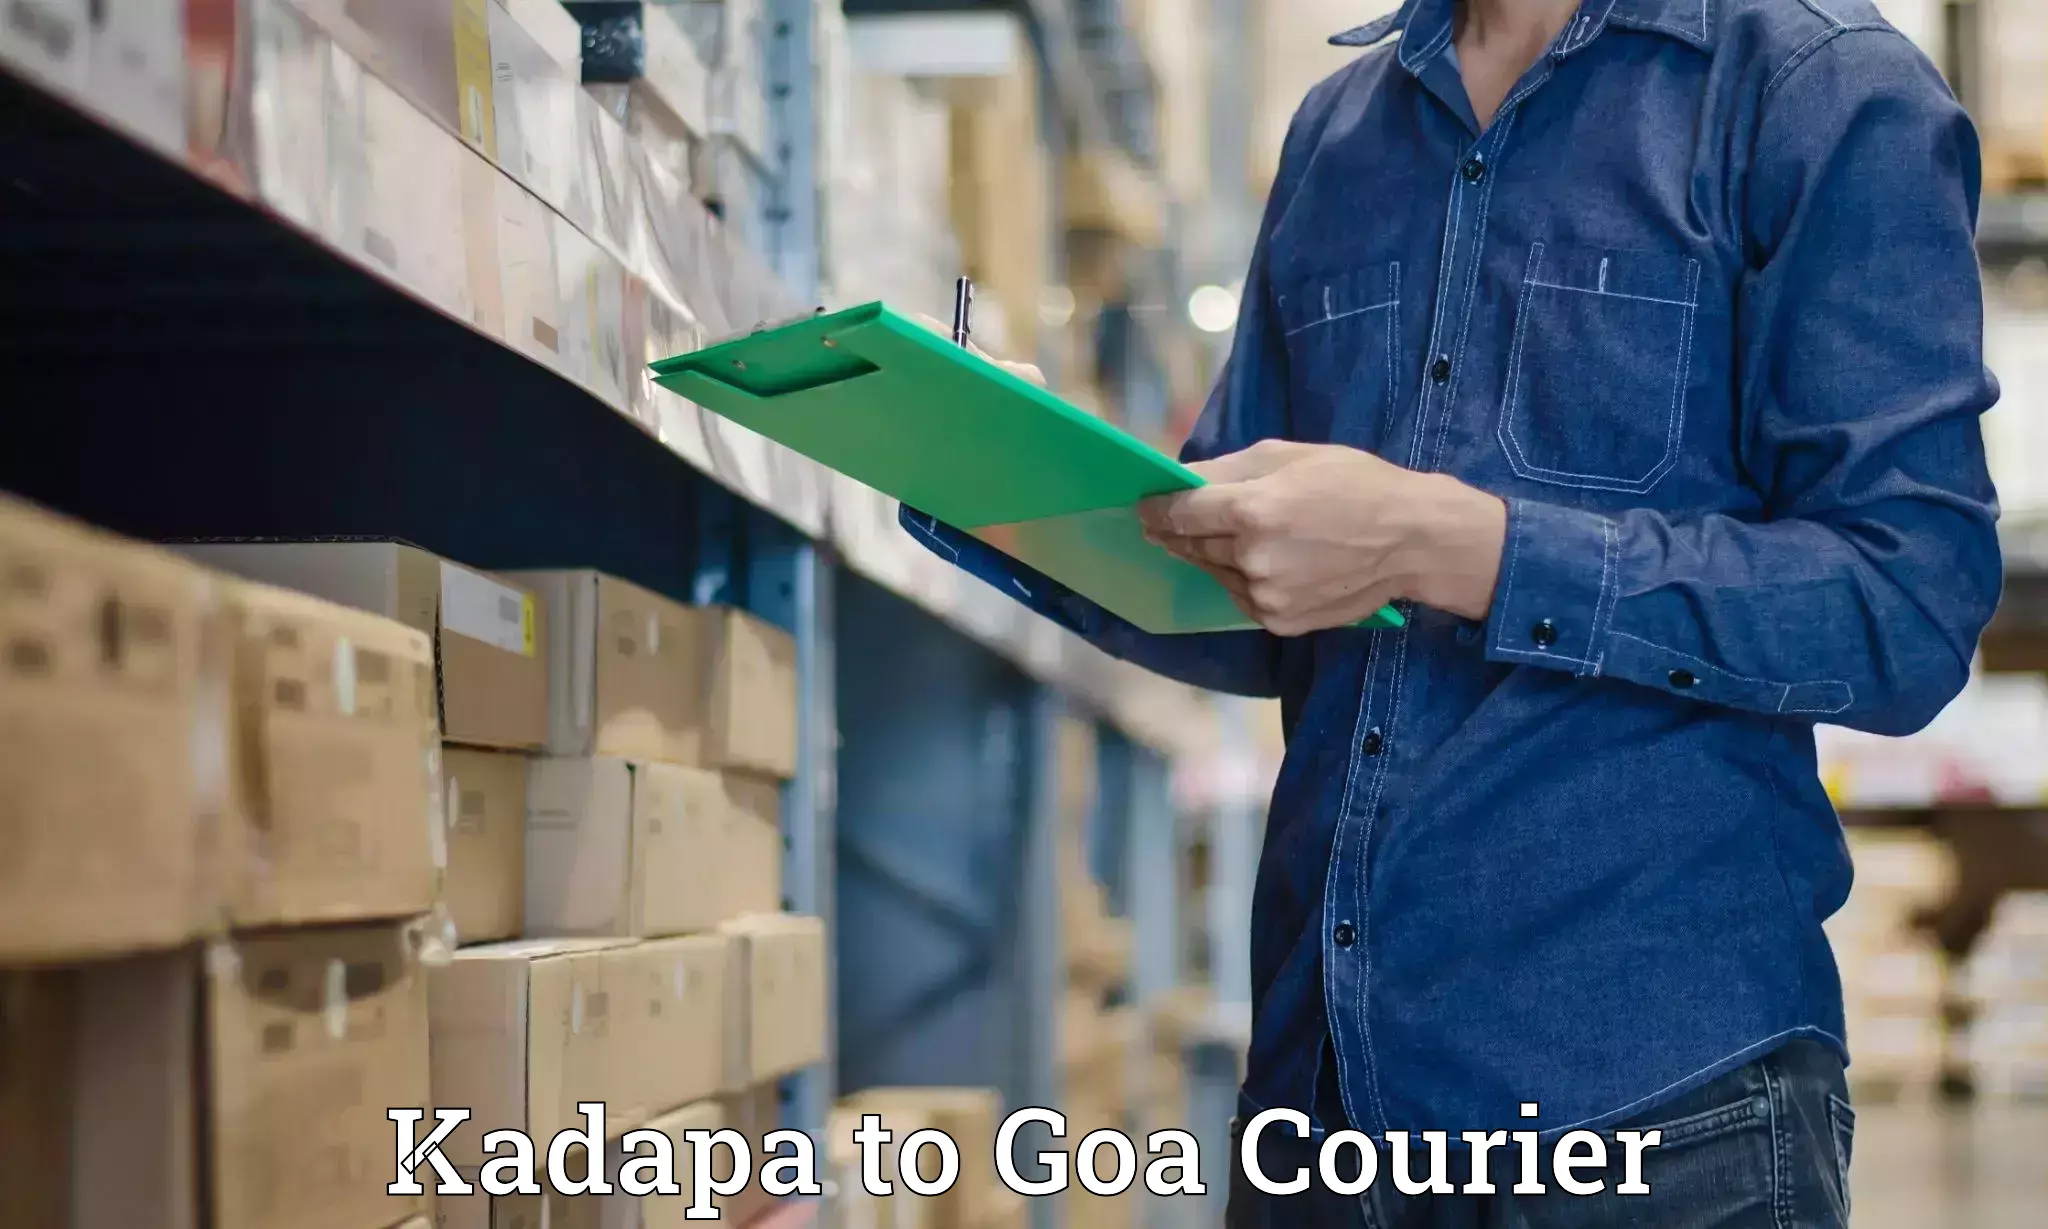 Digital courier platforms Kadapa to South Goa